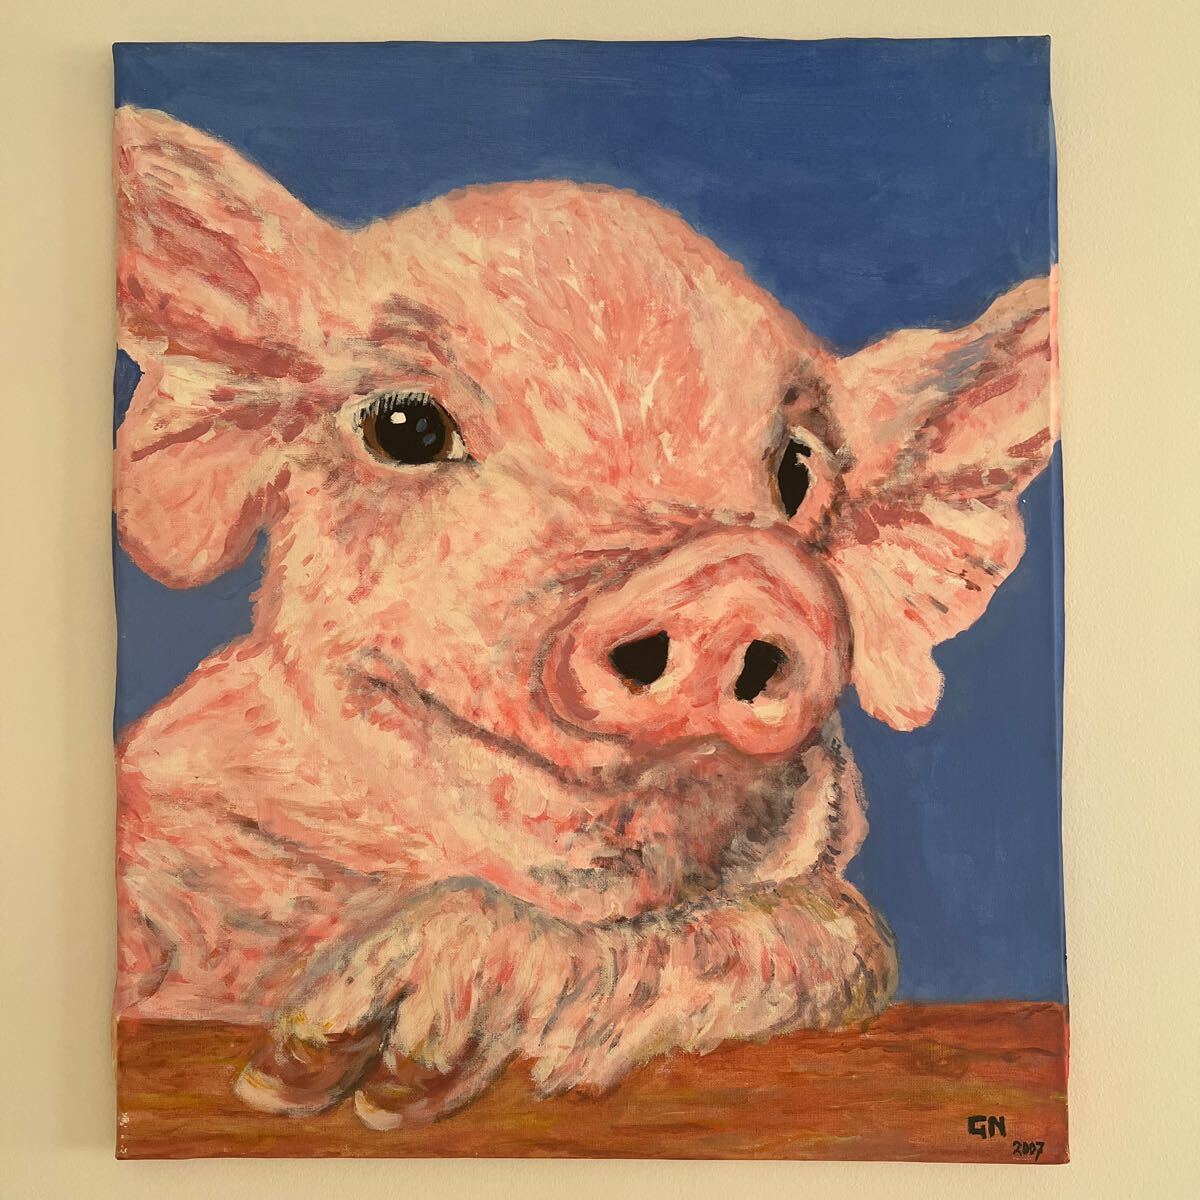 Arte pintura al óleo motivo de cerdo estilo Van Gogh decoración interior antigua productos europeos pintura imagen de animal envío gratis hermosas imágenes de animales carteles, Obra de arte, Cuadro, otros